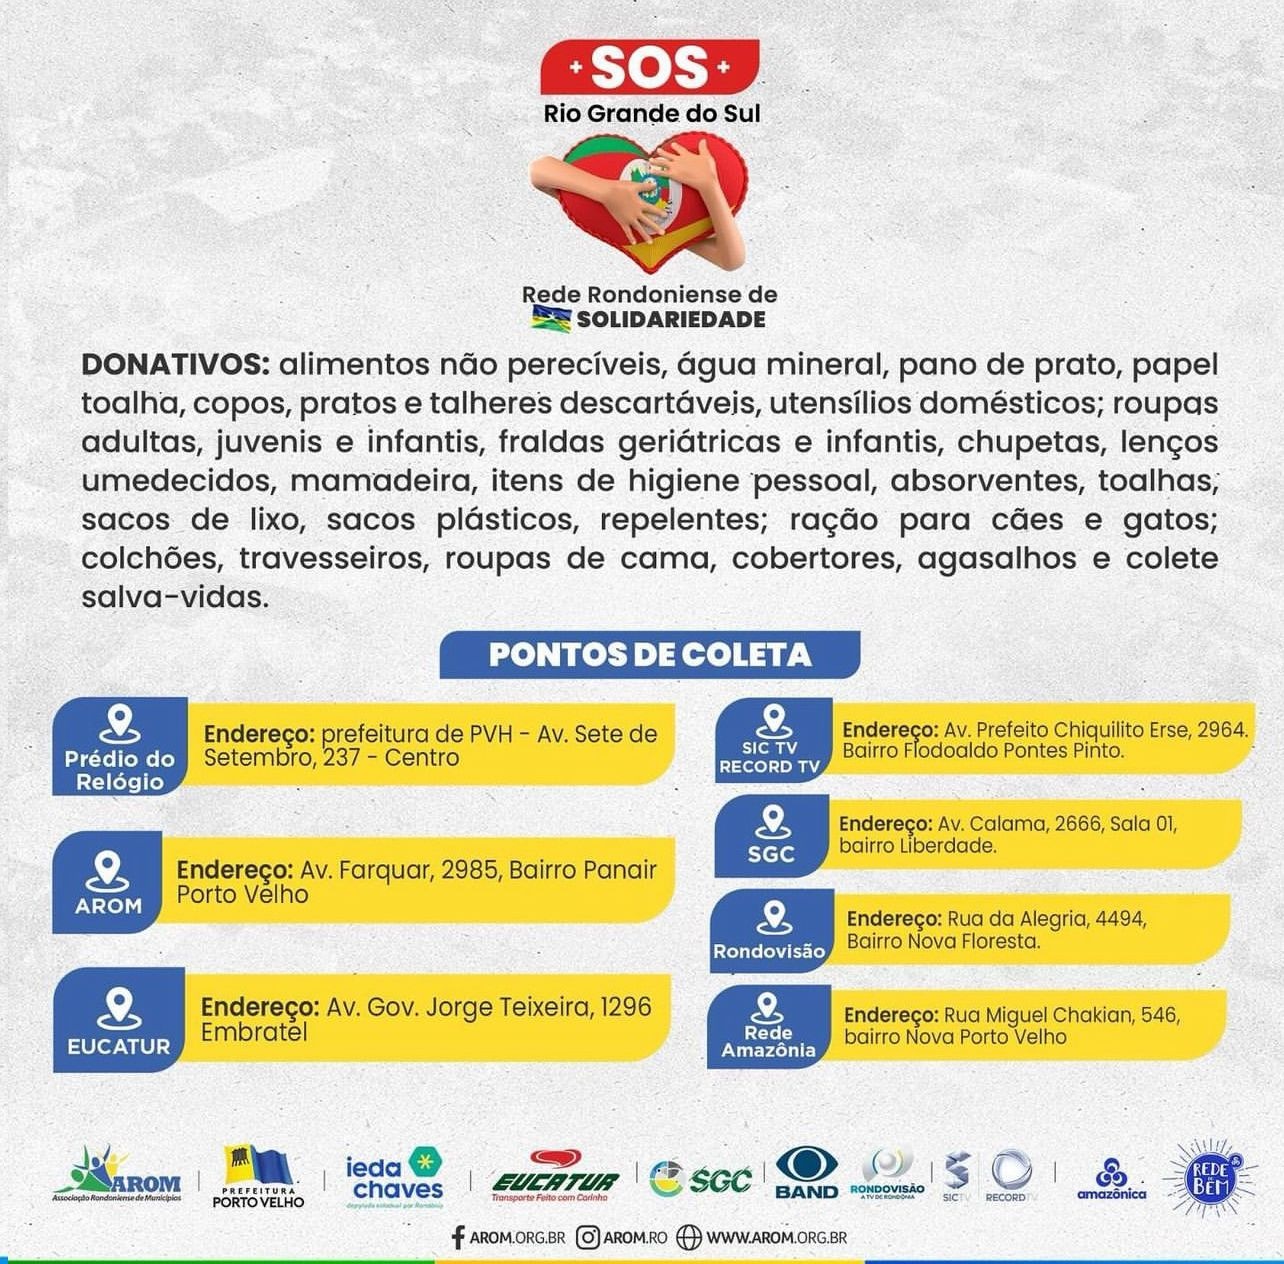 Ieda Chaves faz parte da ação "S.O.S Rio Grande do Sul" que mobiliza doações em Rondônia